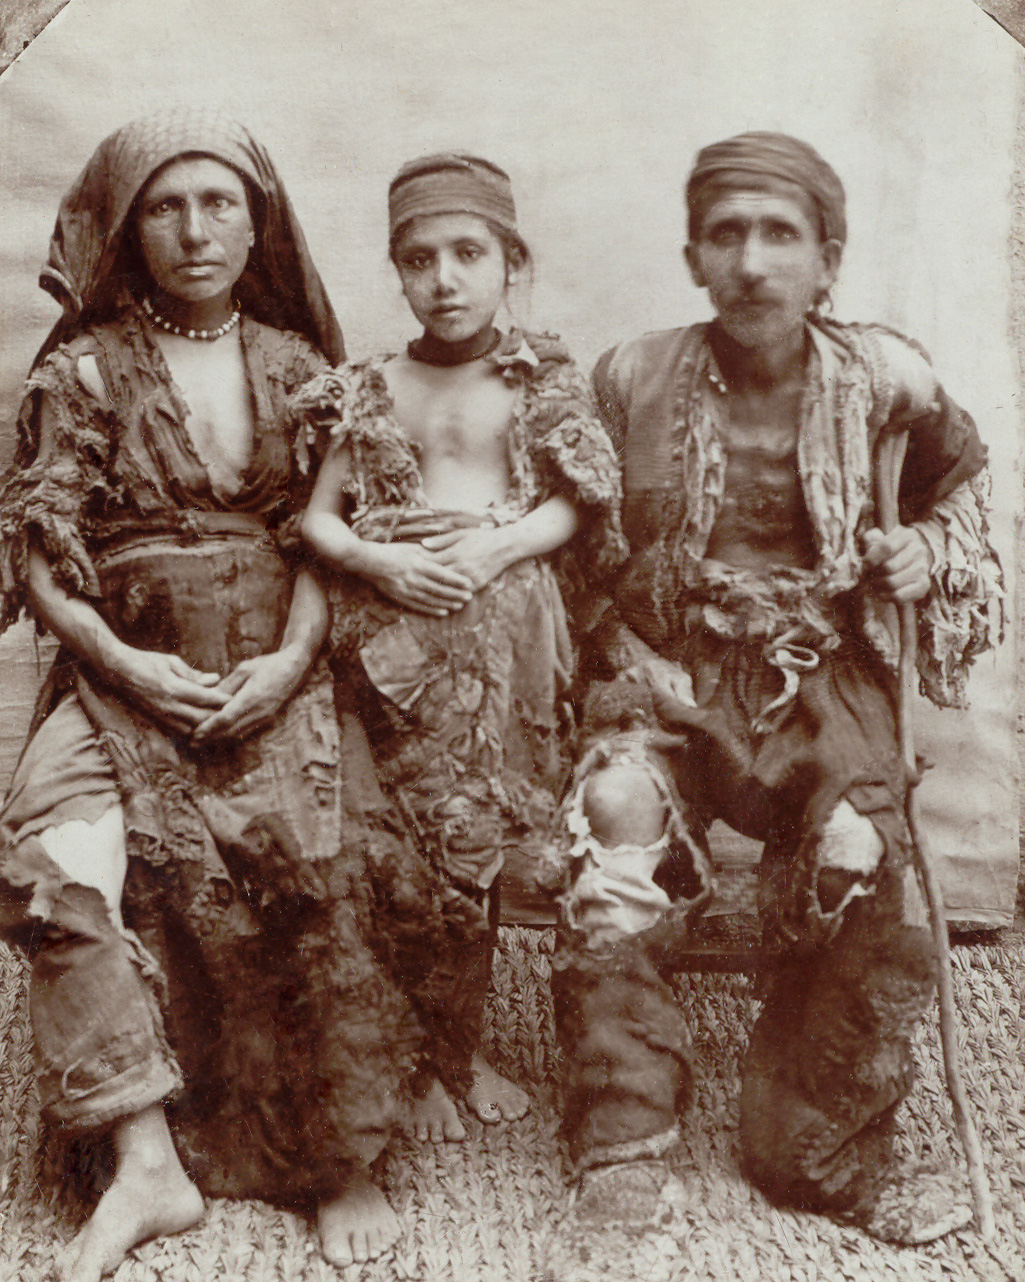 Las atrocidades del genocidio - Genocidio Armenio